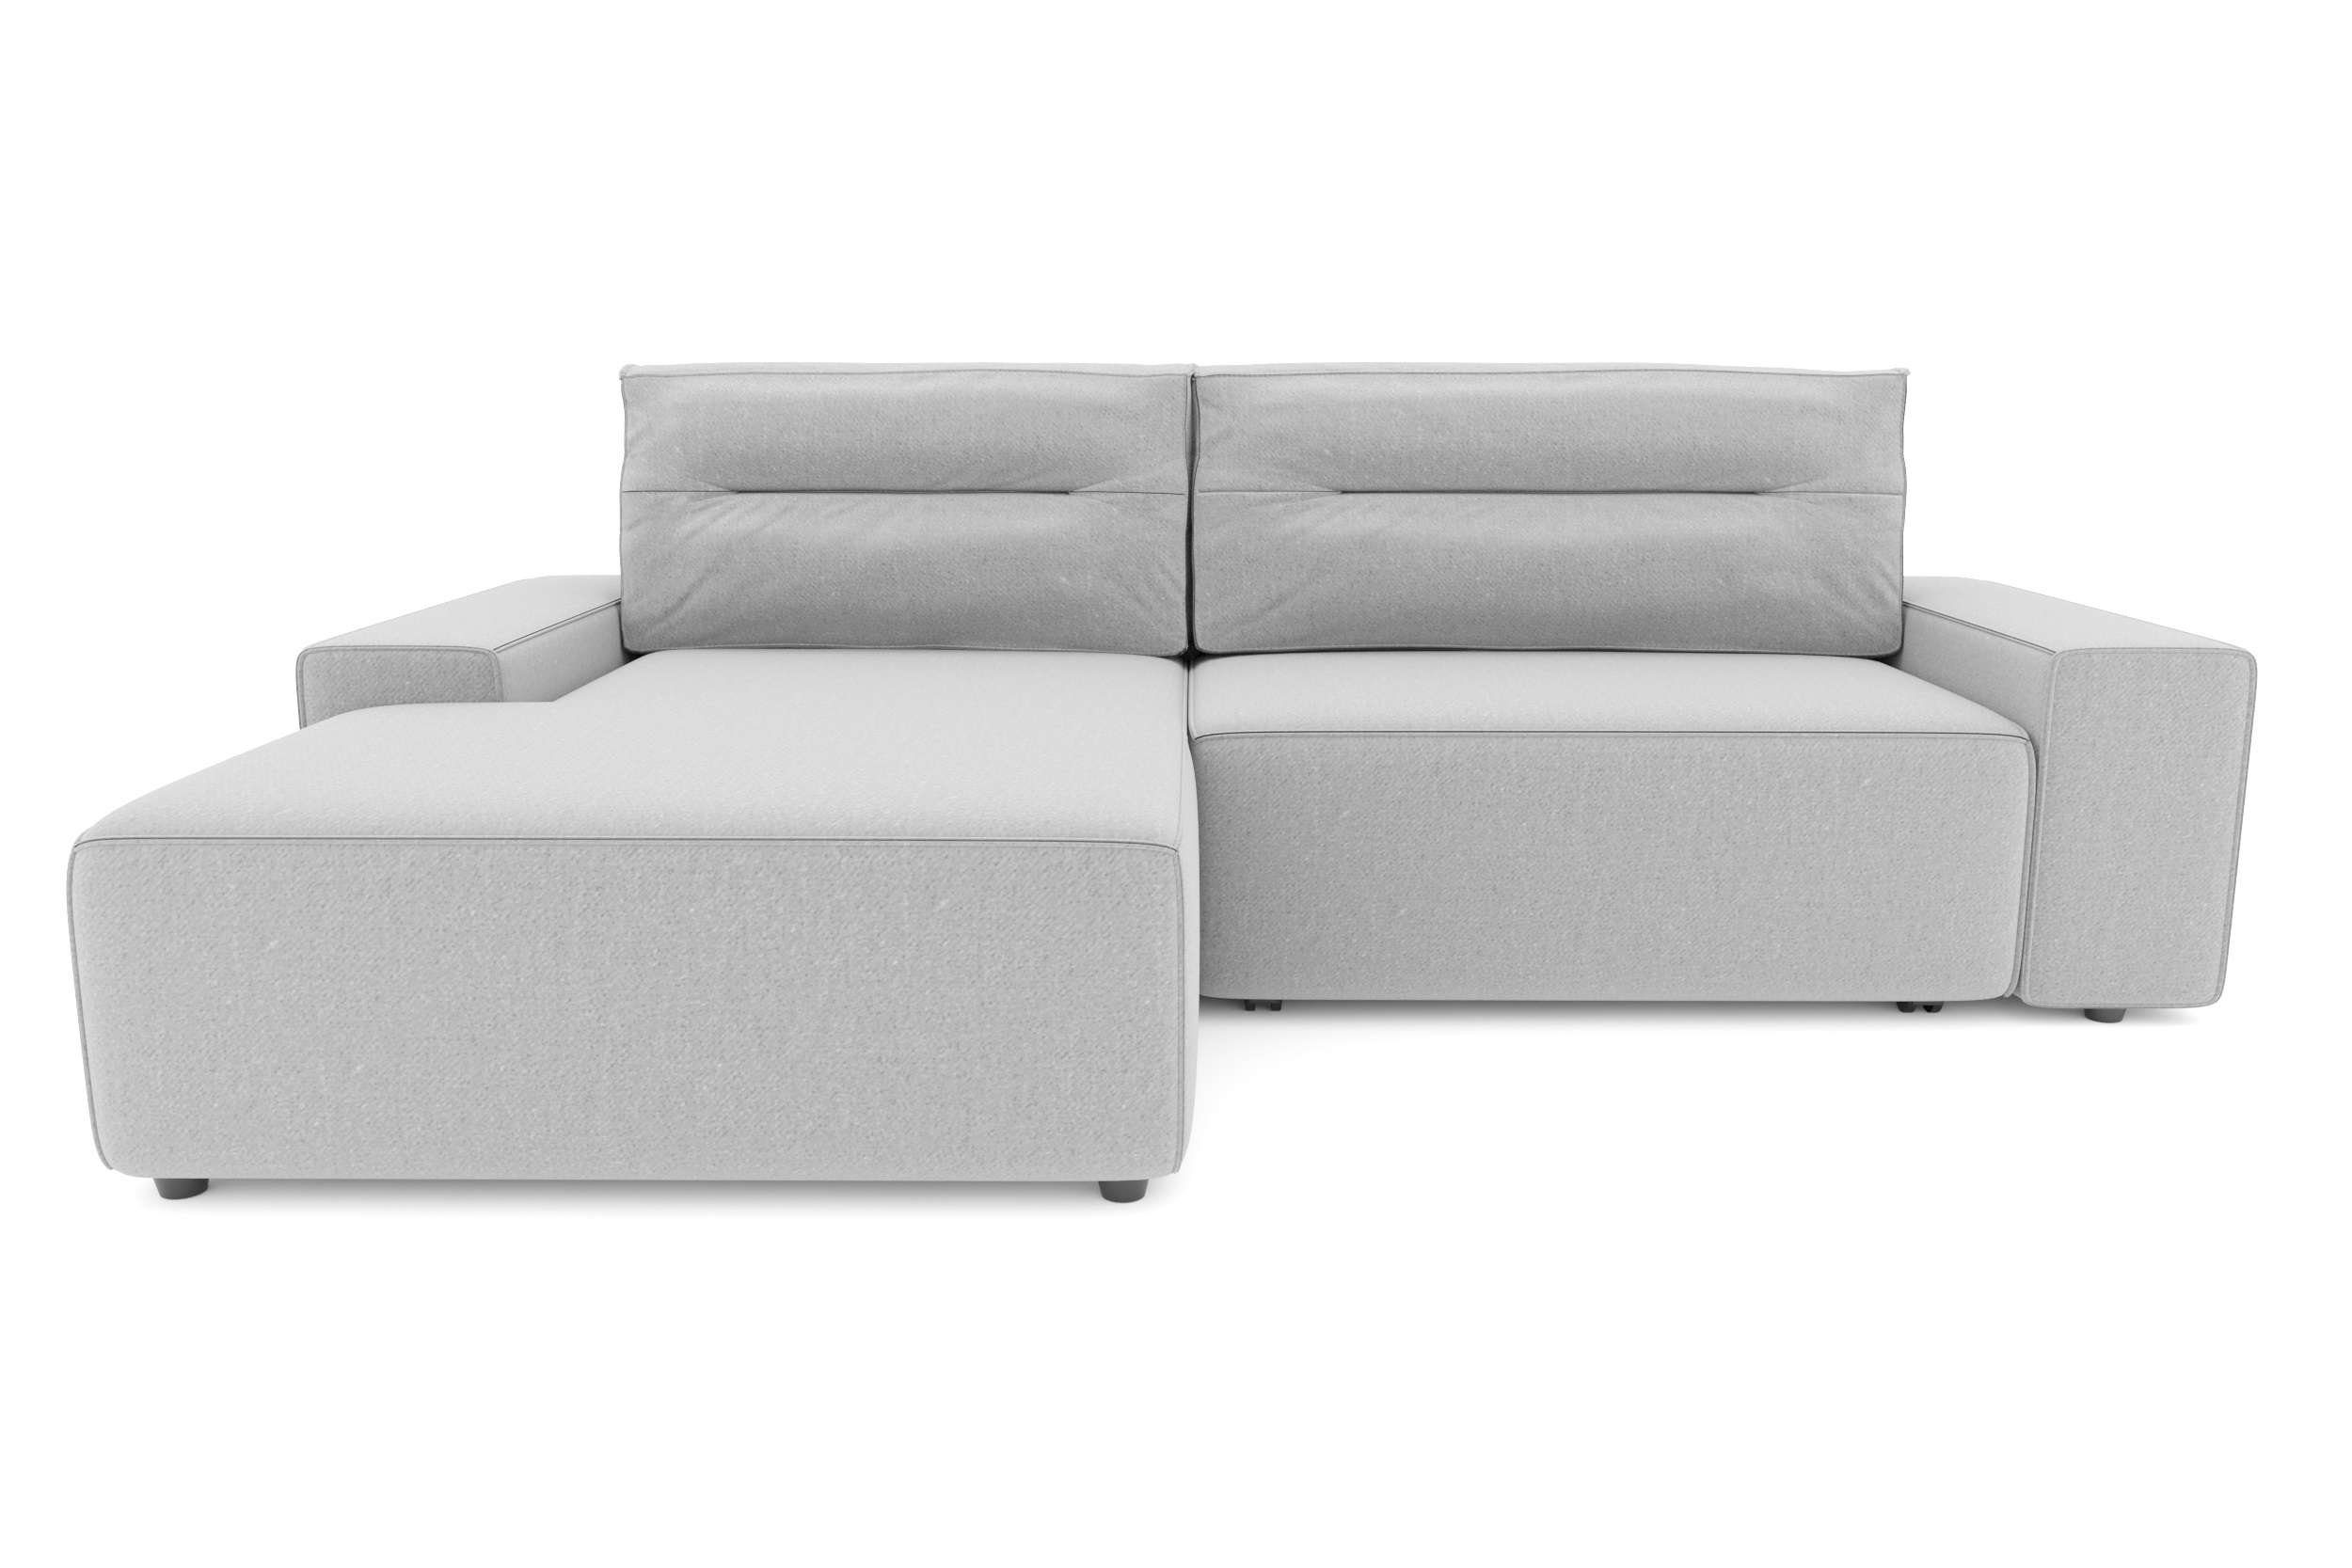 rechts bestellbar, Bettkasten, und Modern L-Form, links wahlweise Emanuel, Design oder Ecksofa Stylefy mit Bettfunktion Eckcouch, mane